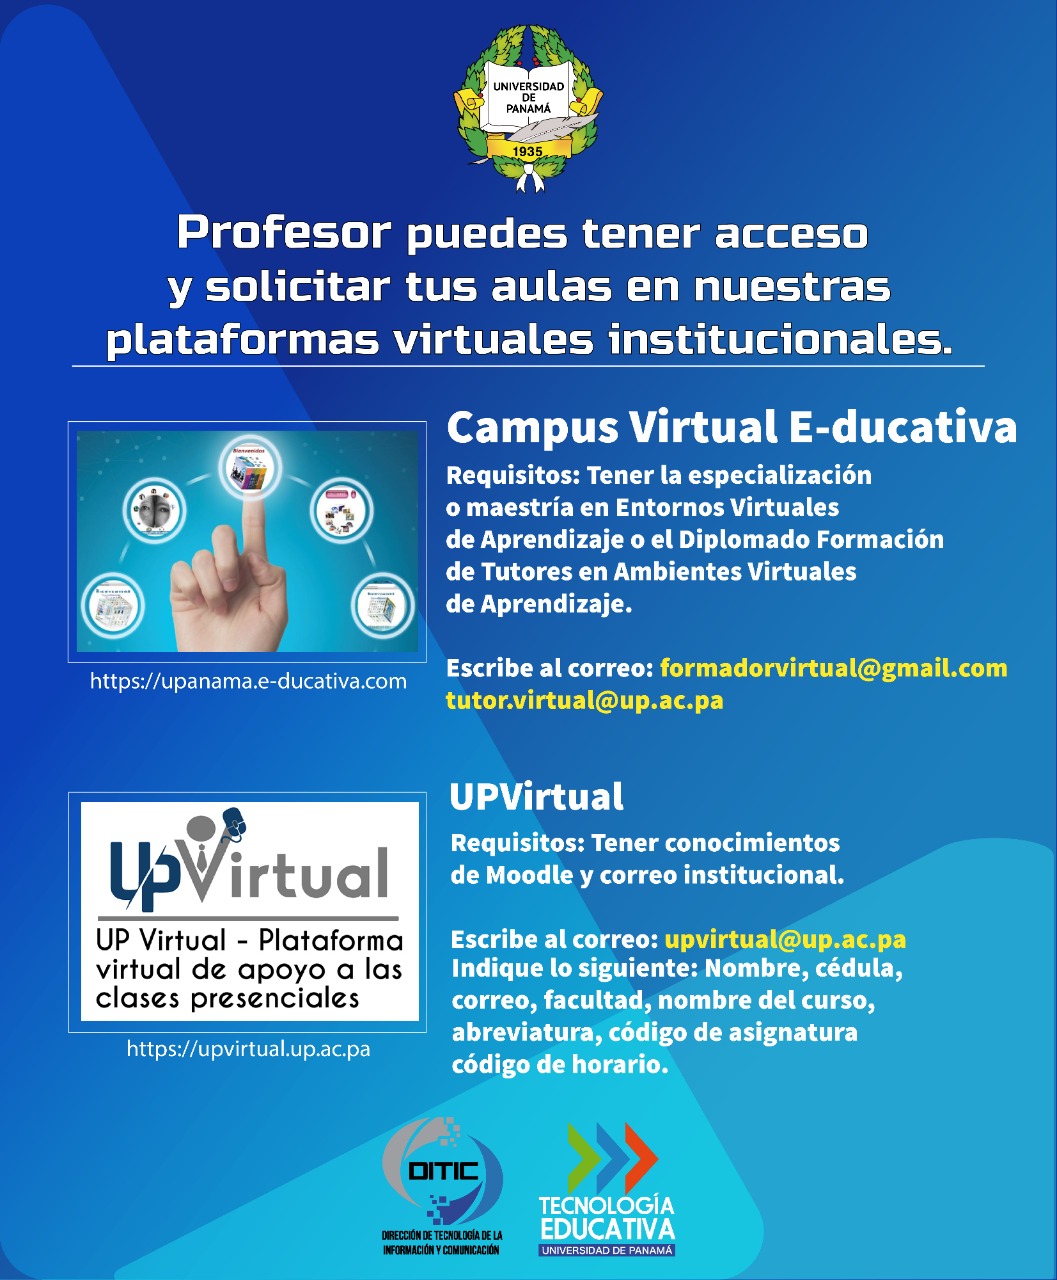 Universidad dePanamá on Twitter La Universidad de Panamá pone a